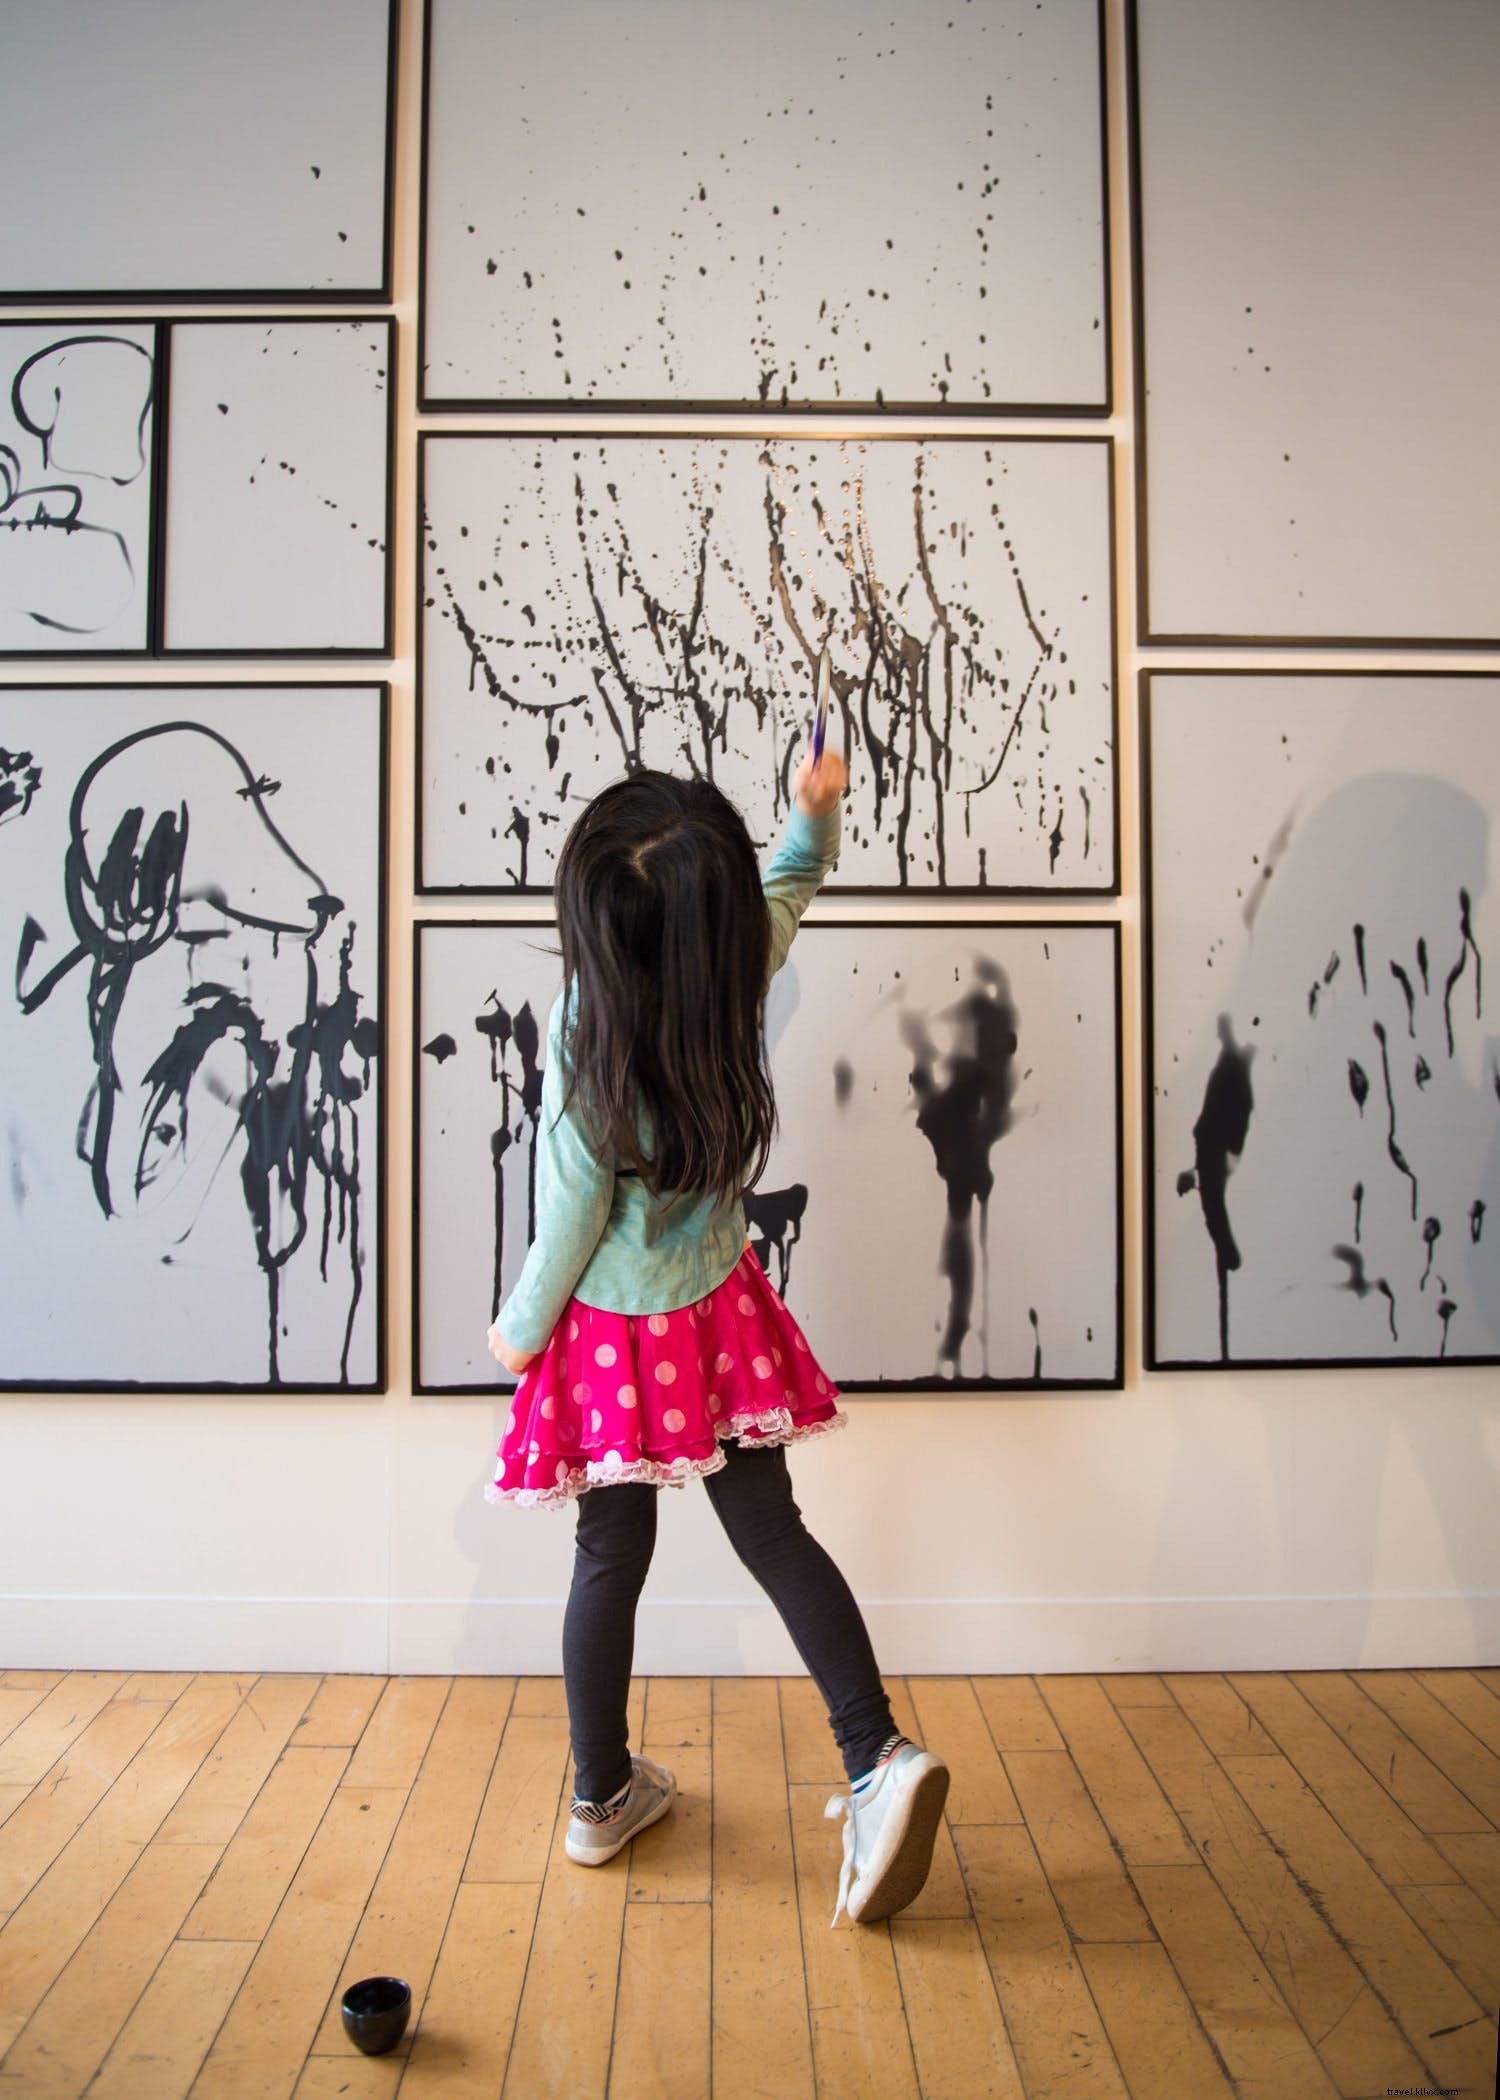 11 gallerie d arte da visitare con i bambini per una giornata creativa 